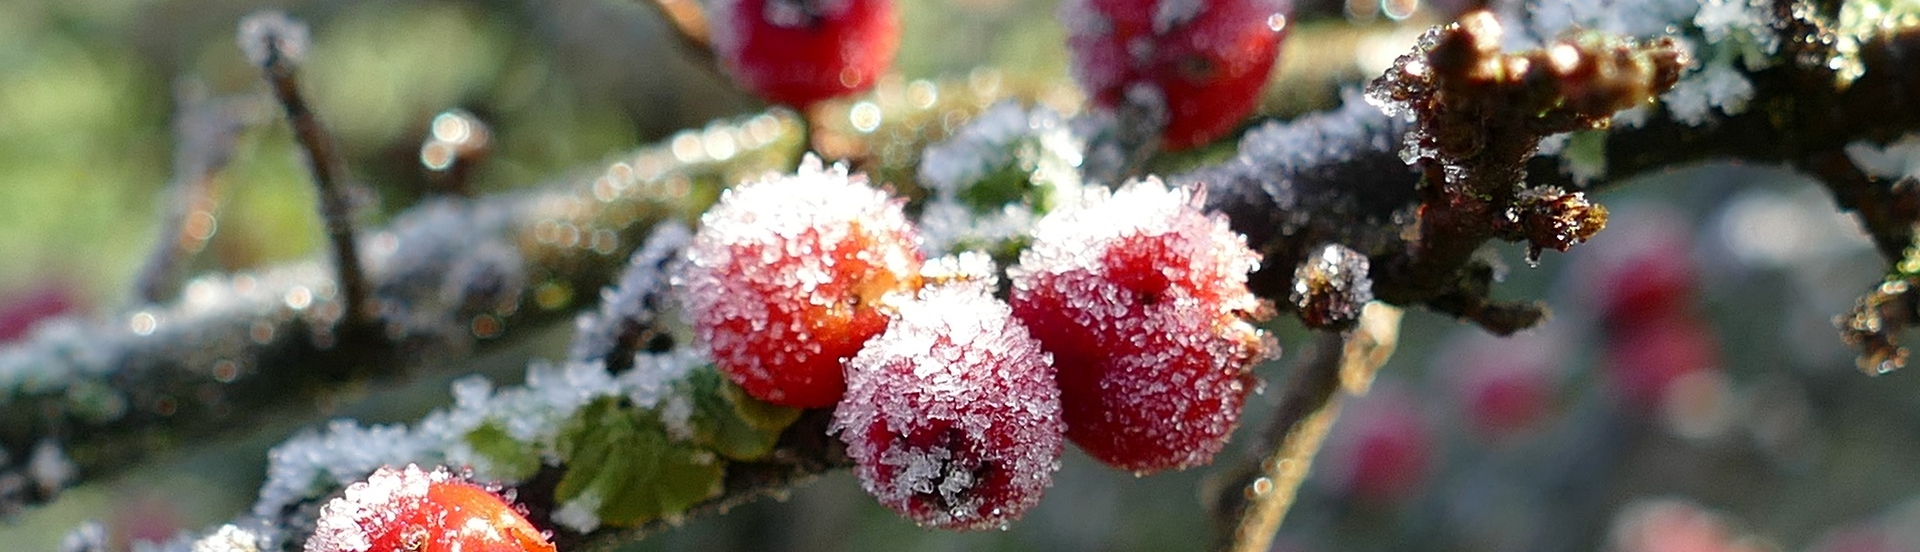 Die Europäische Stechpalme besticht durch ihre roten Früchte im Dezember